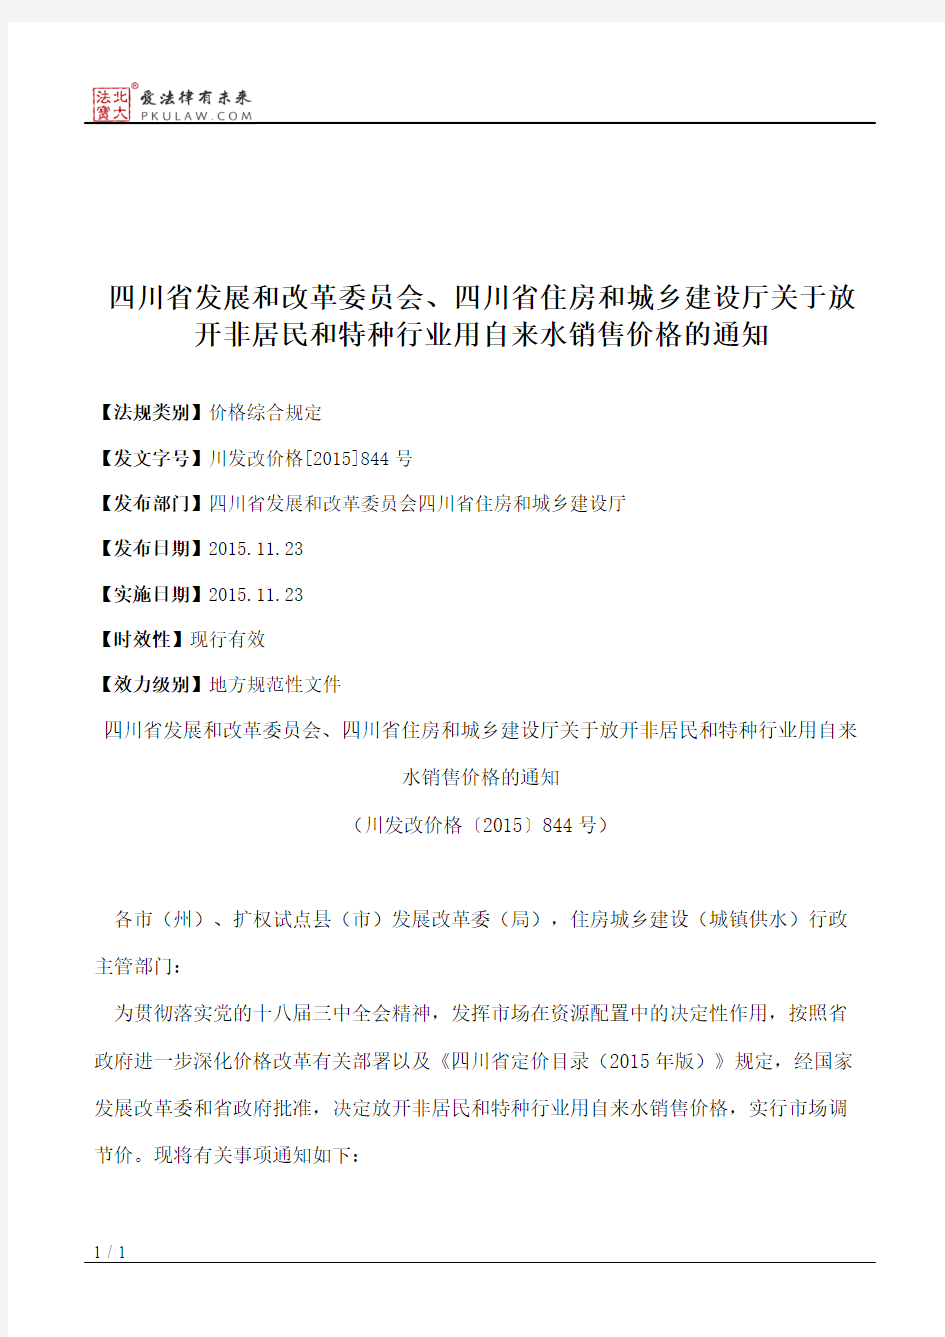 四川省发展和改革委员会、四川省住房和城乡建设厅关于放开非居民